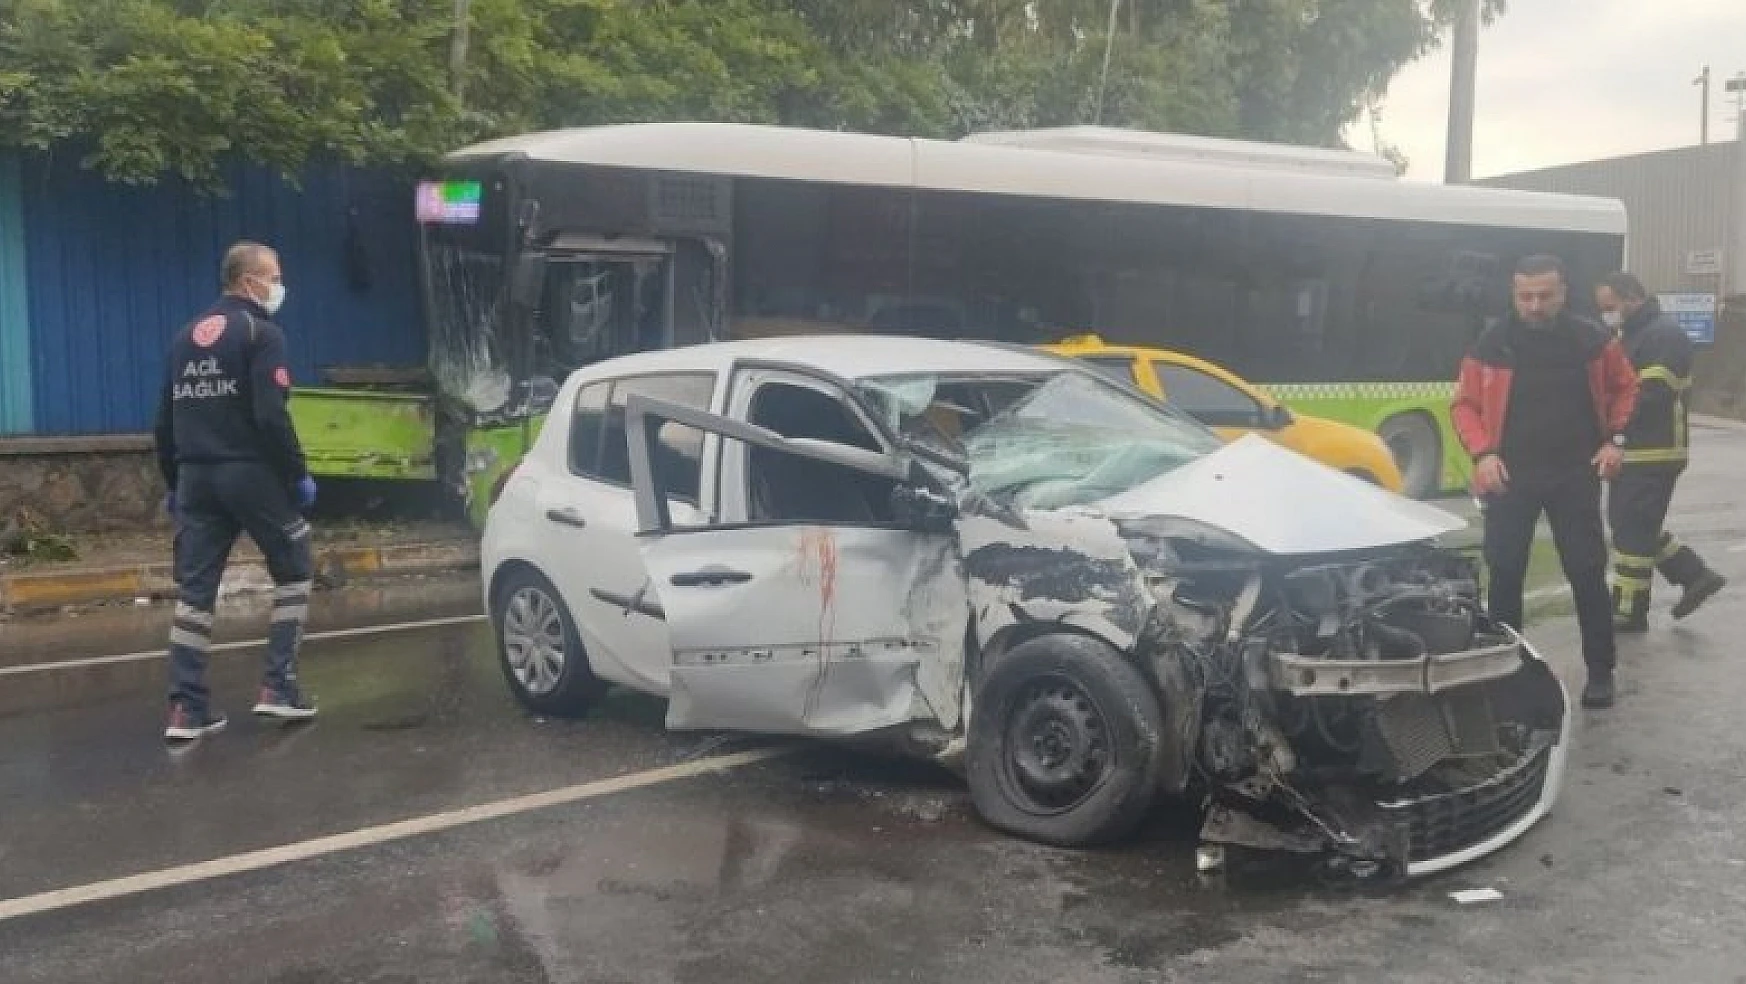 Belediye otobüsü ile otomobil çarpıştı, kadın sürücü hayatını kaybetti